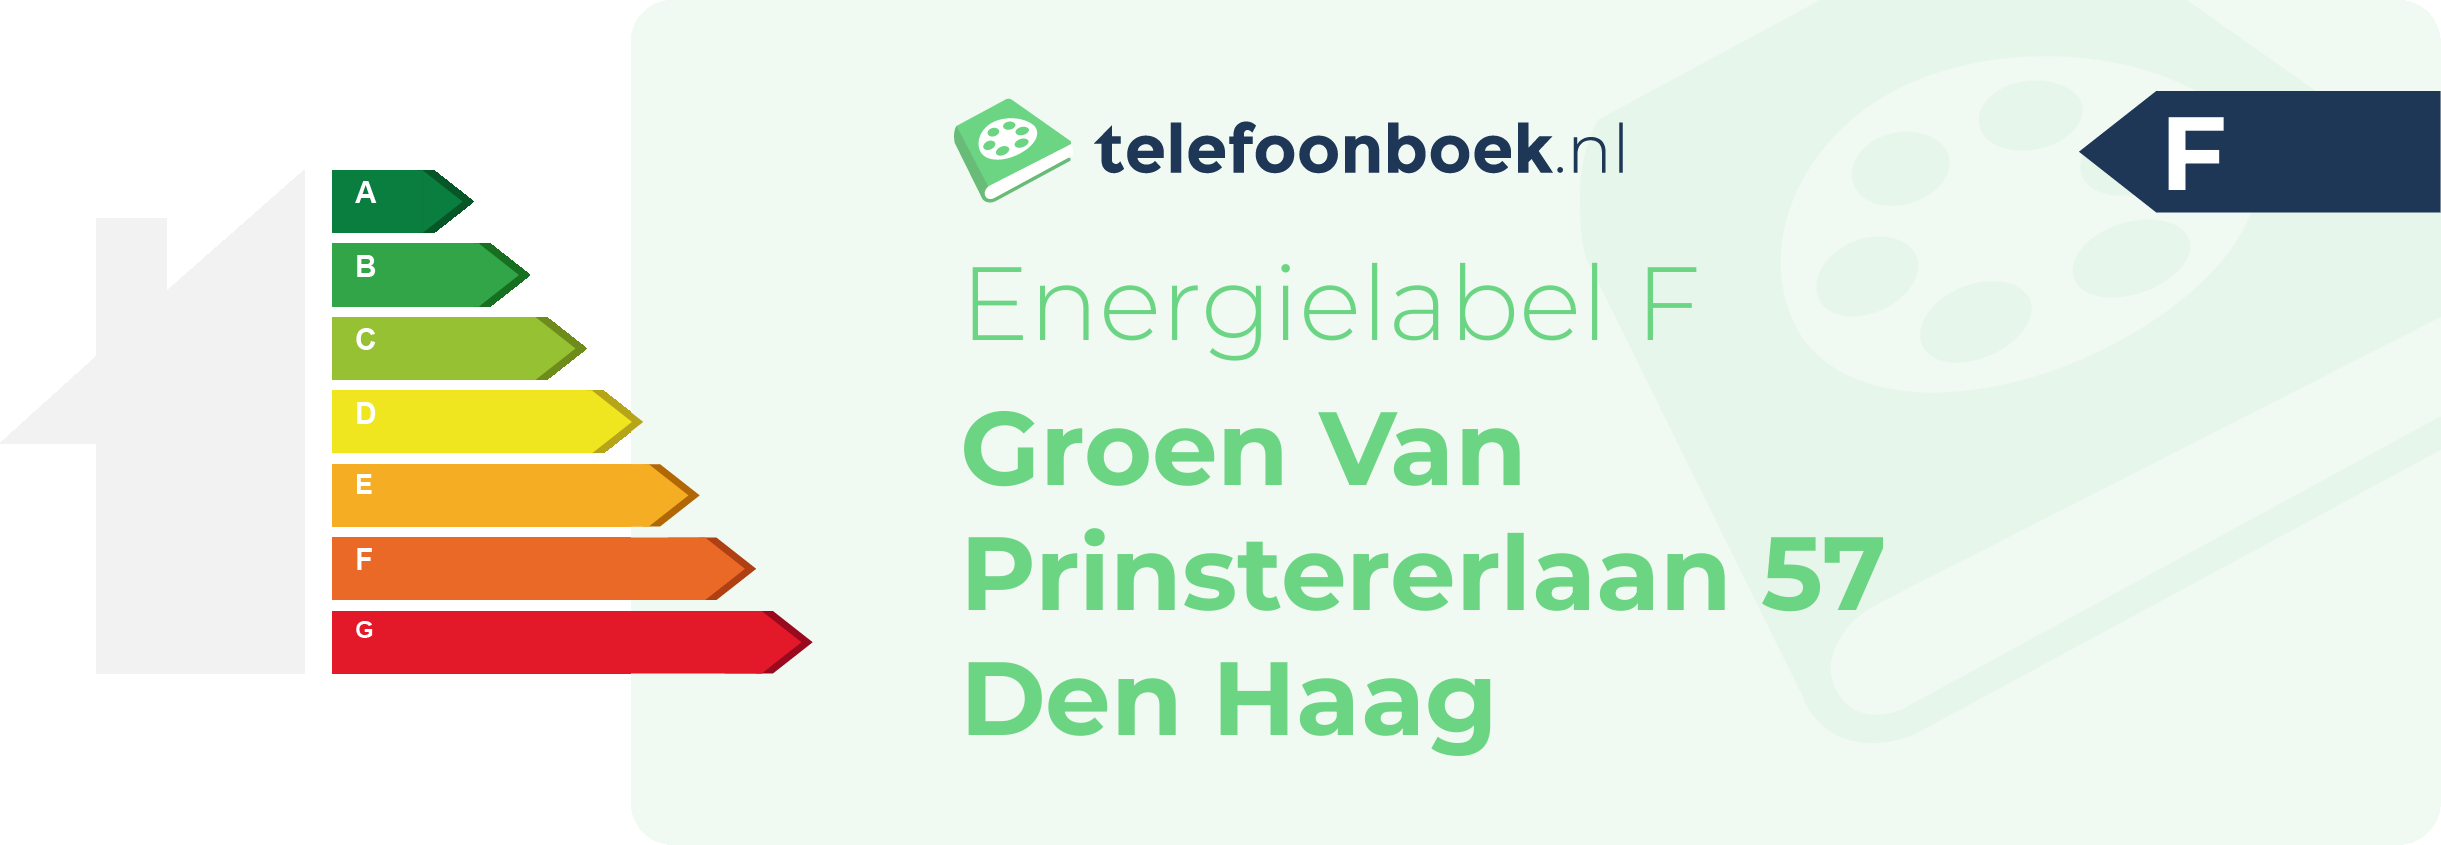 Energielabel Groen Van Prinstererlaan 57 Den Haag